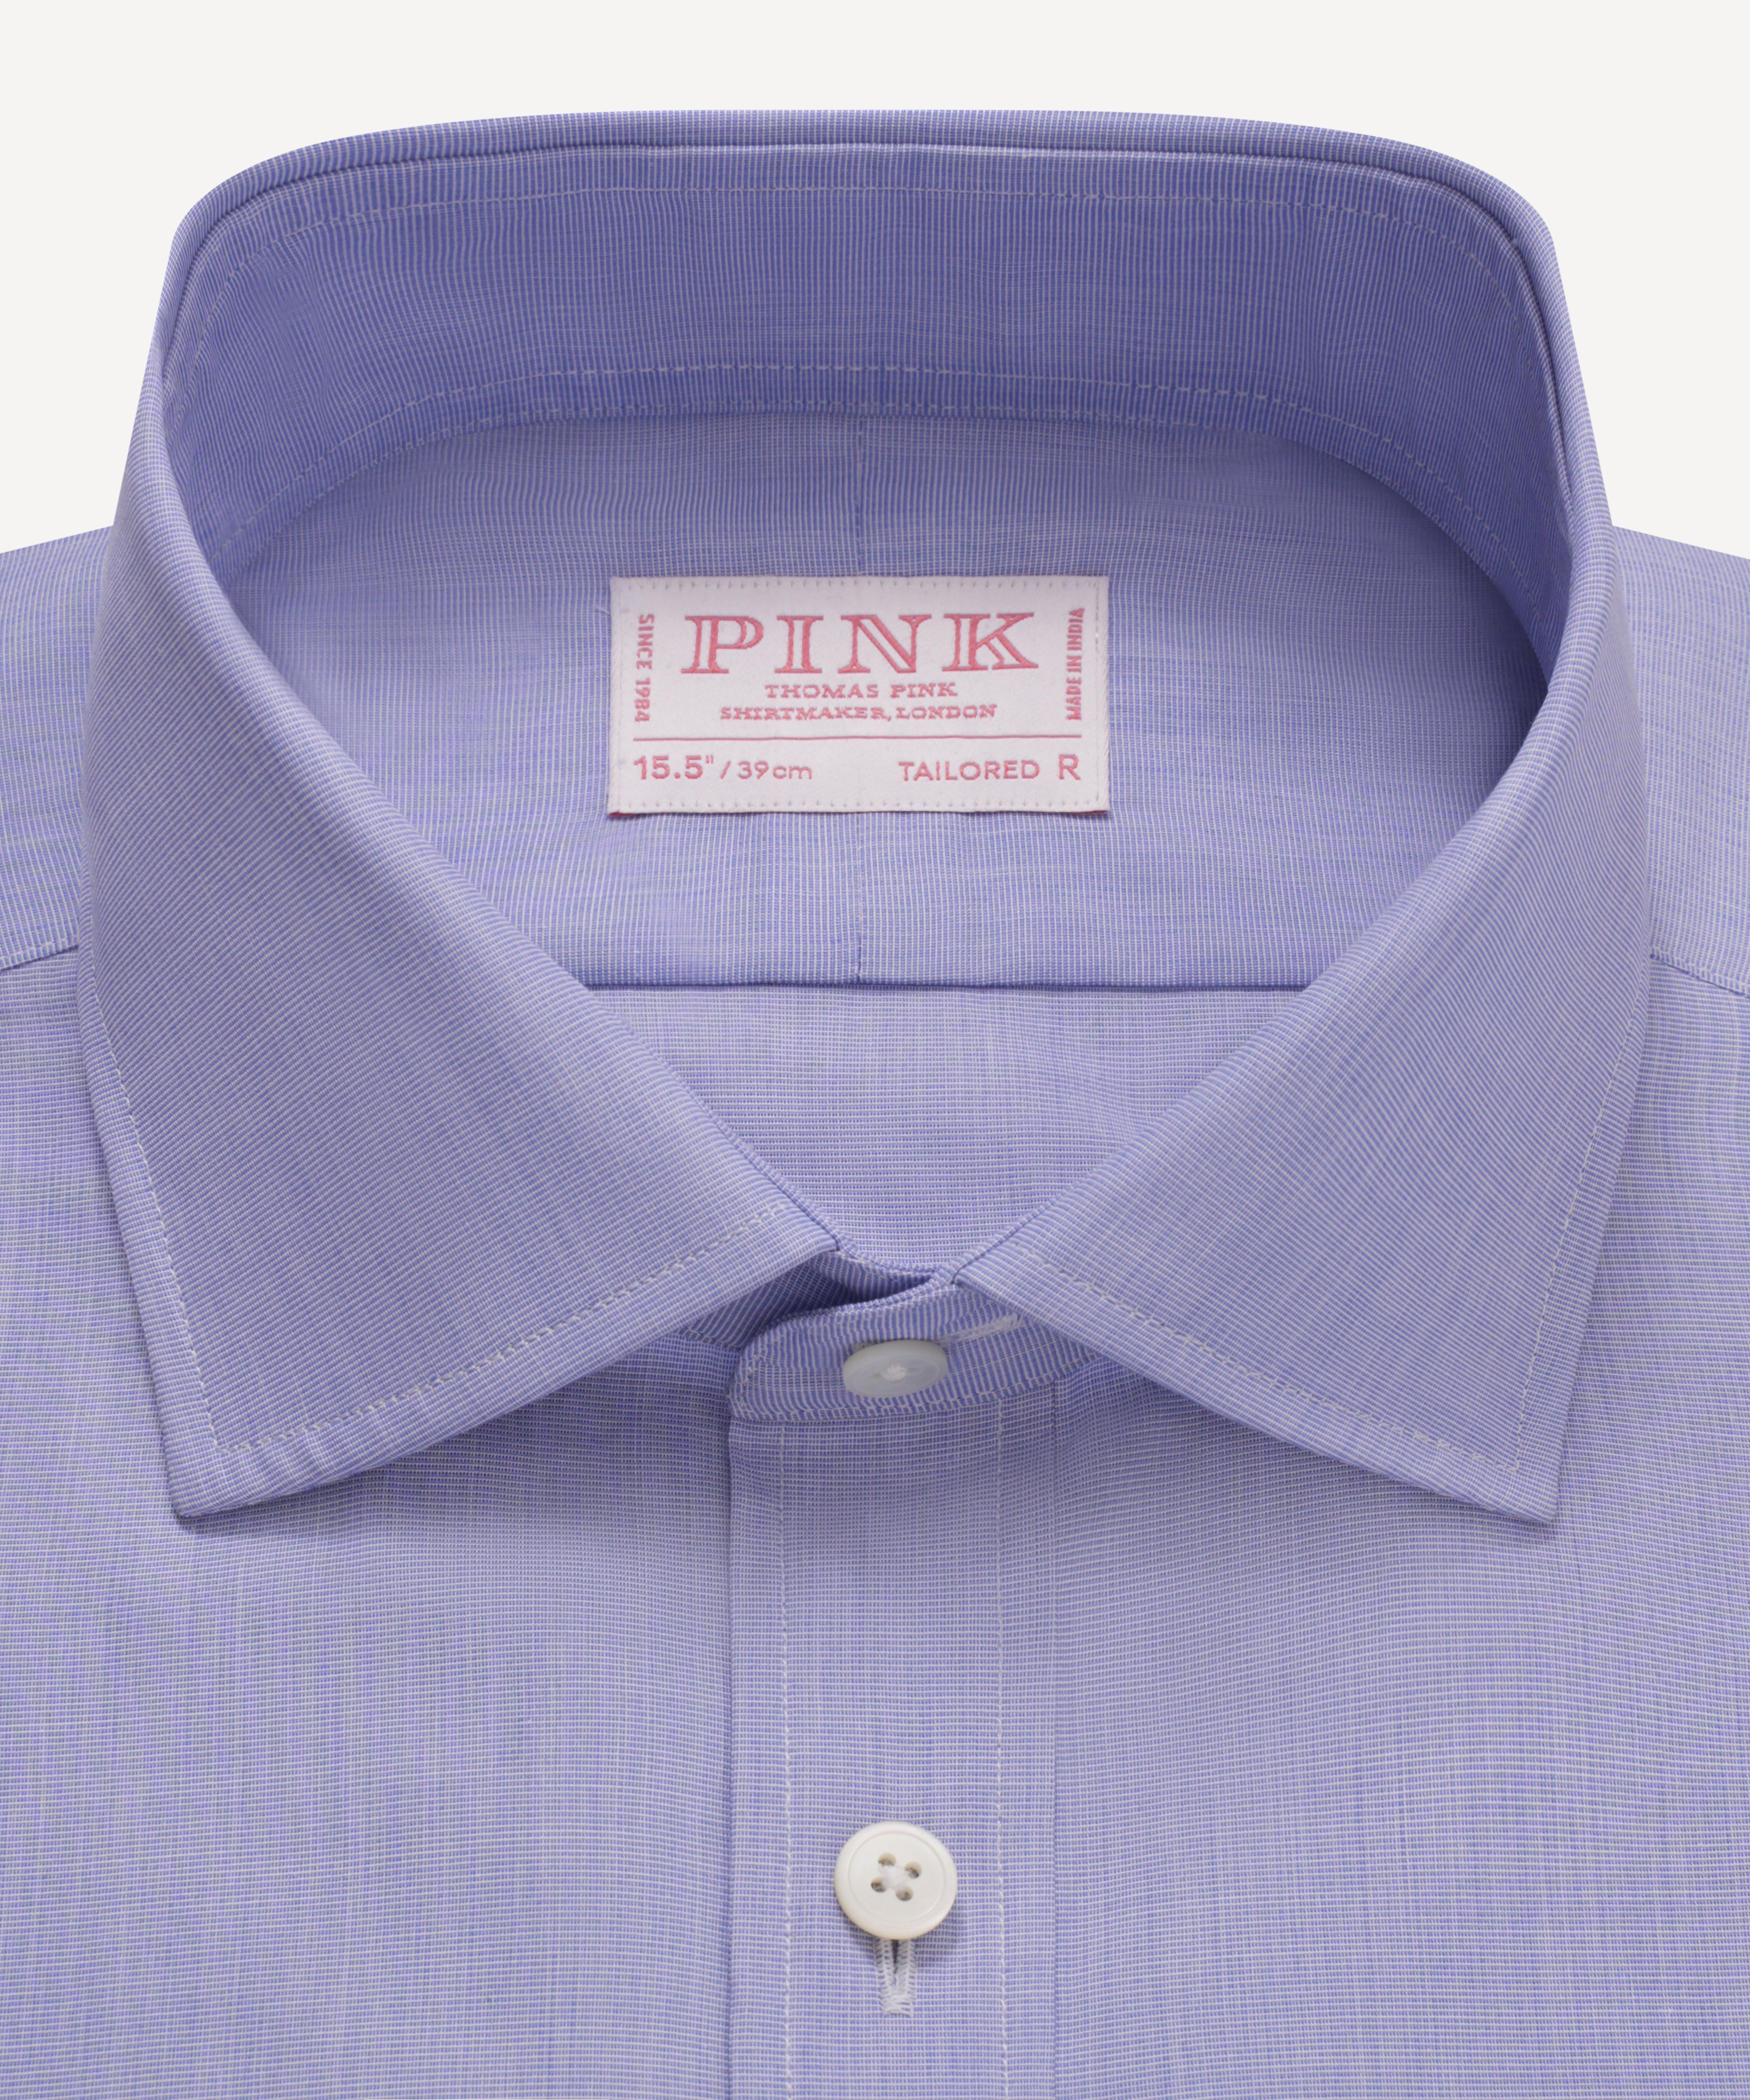 TM Lewin Fitted Pink Fine Stripe Dual Cuff Shirt